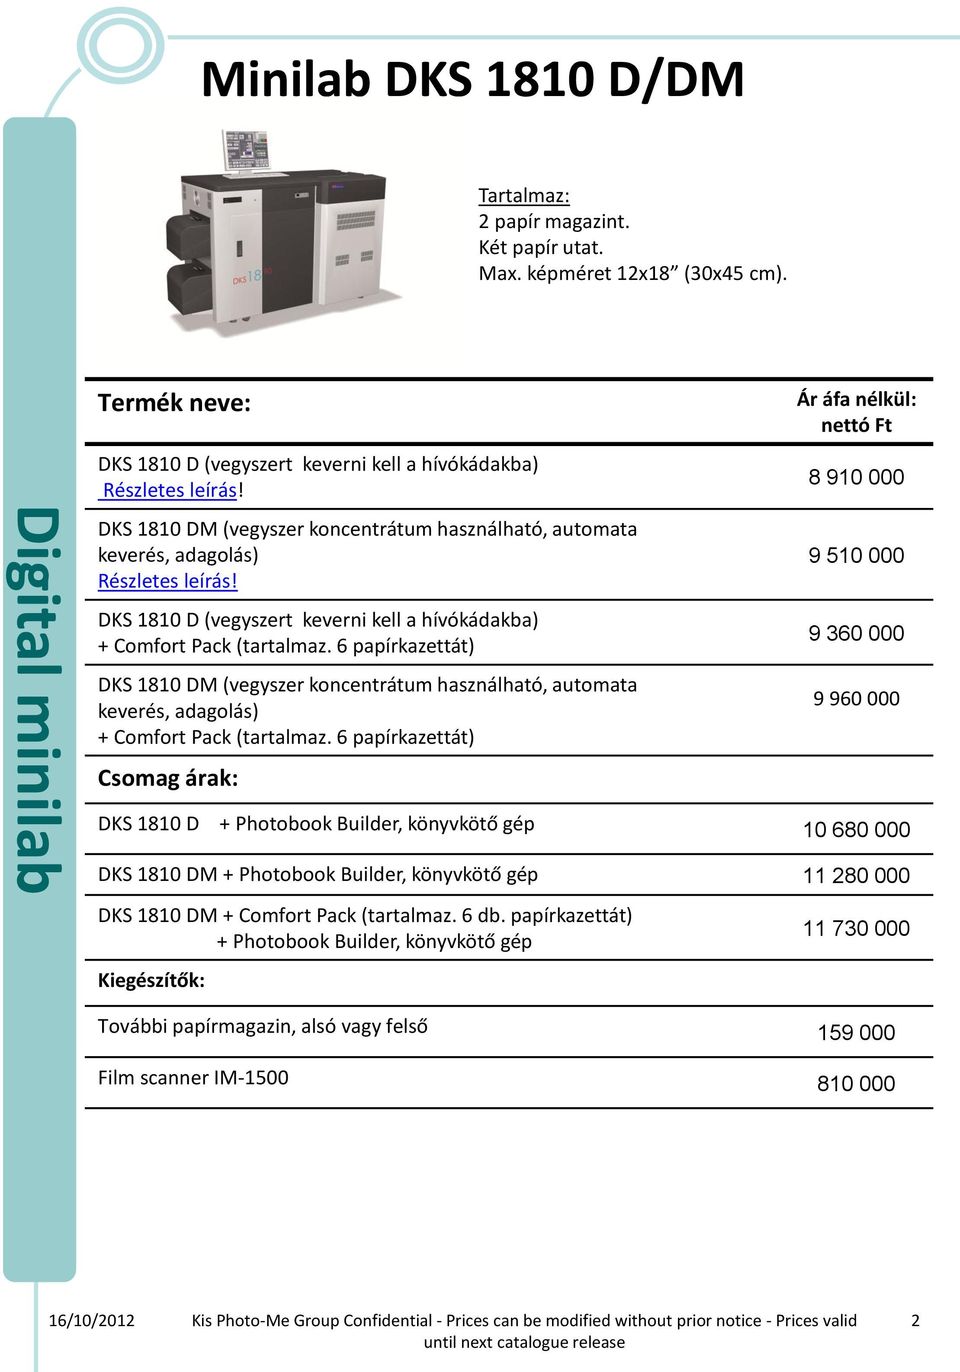 (tartalmaz. 6 papírkazettát) DKS 1810 DM (vegyszer koncentrátum használható, automata keverés, adagolás) + Comfort Pack (tartalmaz.